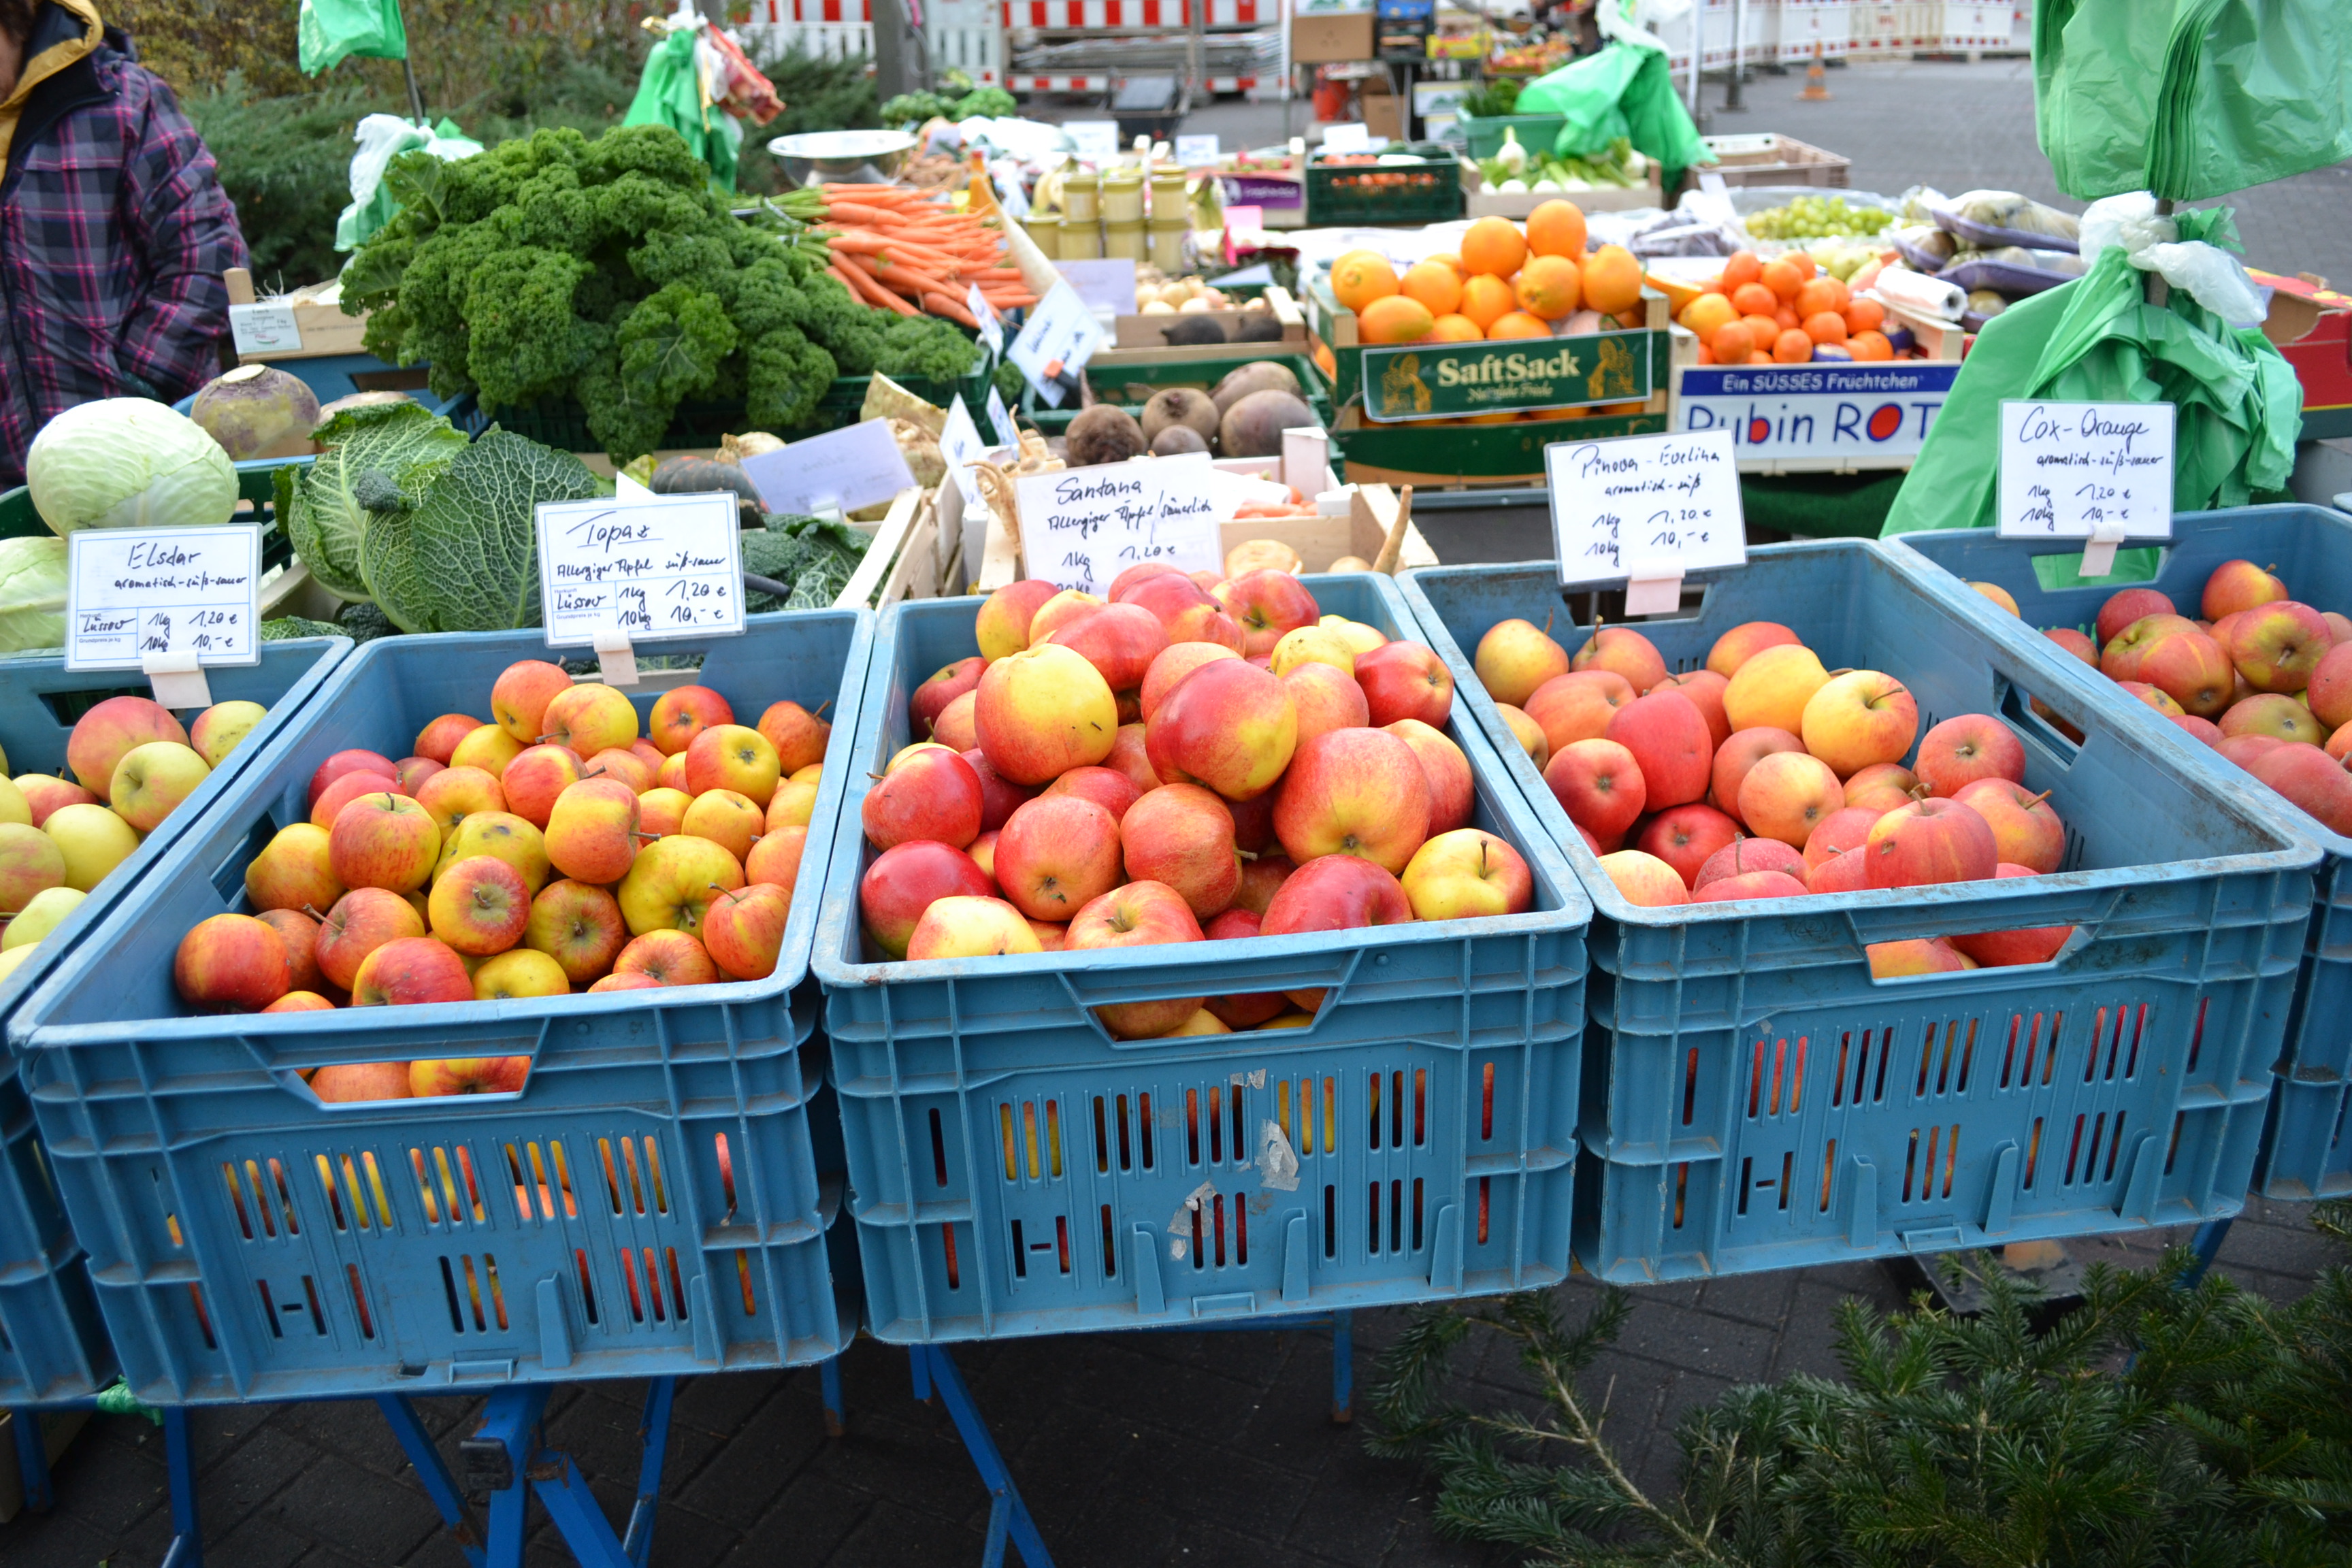 frisches Obst und Gemüse, welches auf dem Markt stets angeboten wird